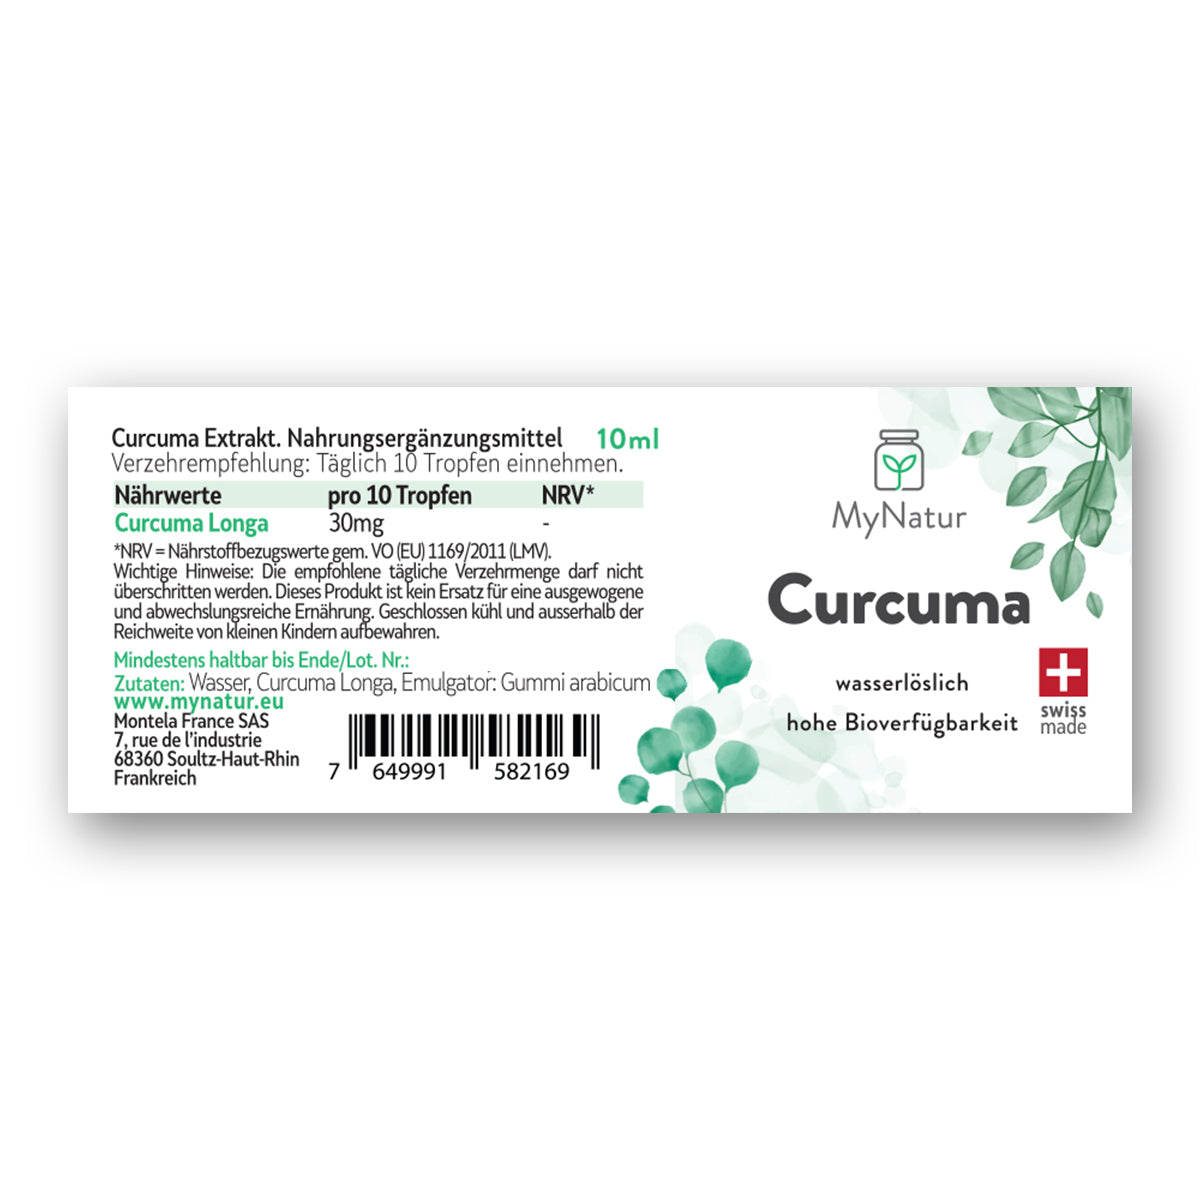 Curcuma MyNatur Mizellen Swiss Made hohe Bioverfügbarkeit